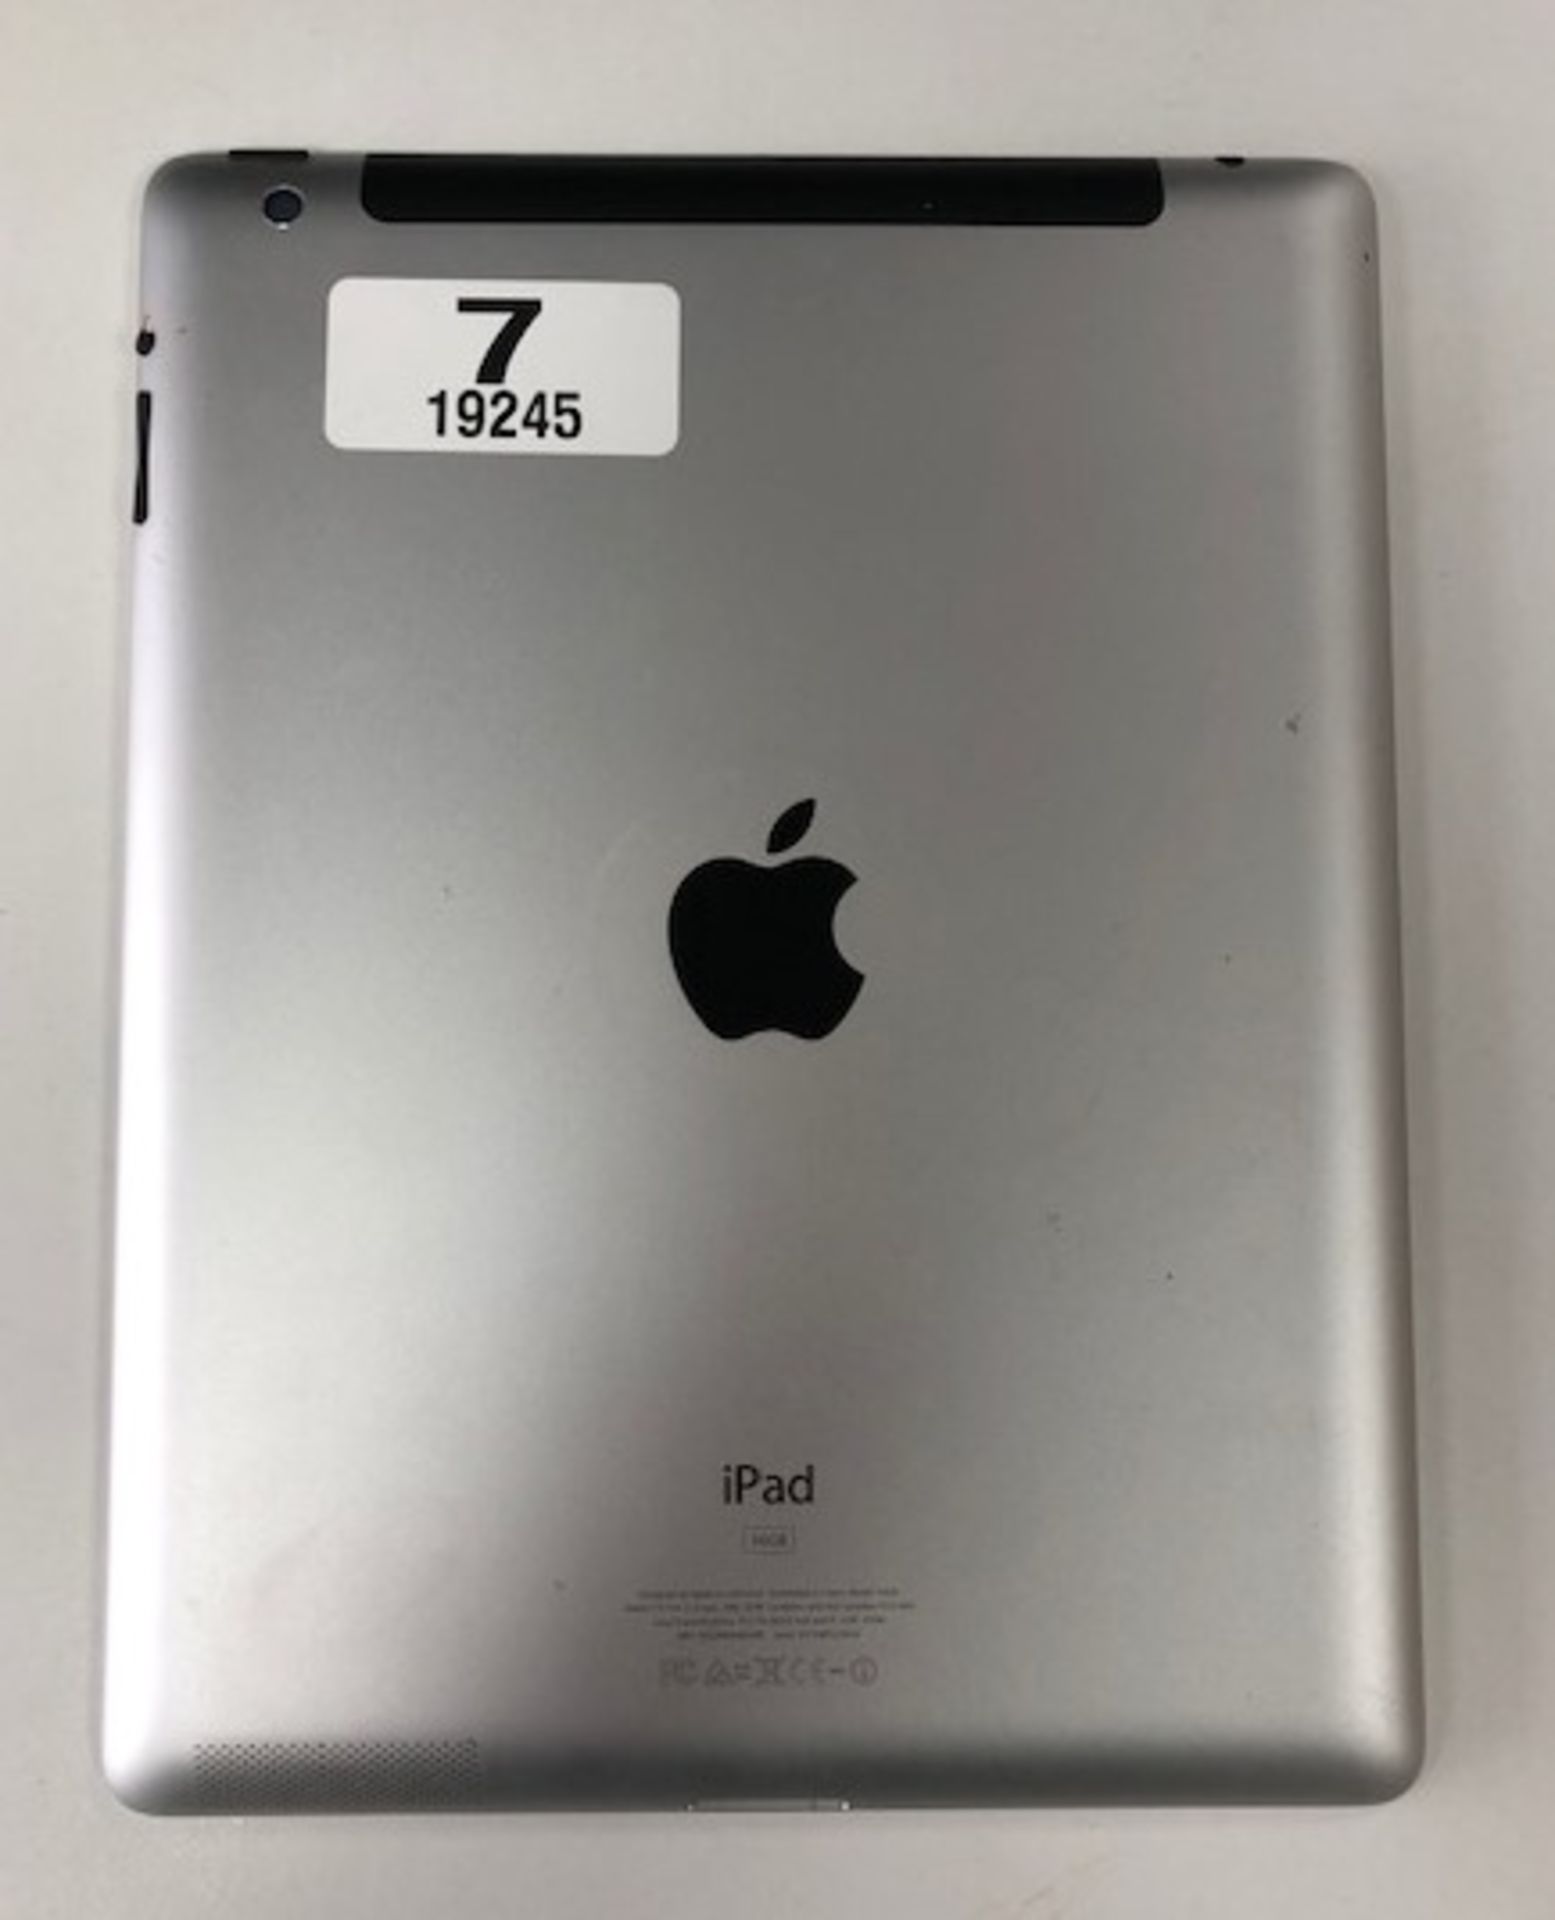 Apple iPad | YOM: 2012 | 3rd Gen | NO BOX | NO CHARGER - Image 3 of 4